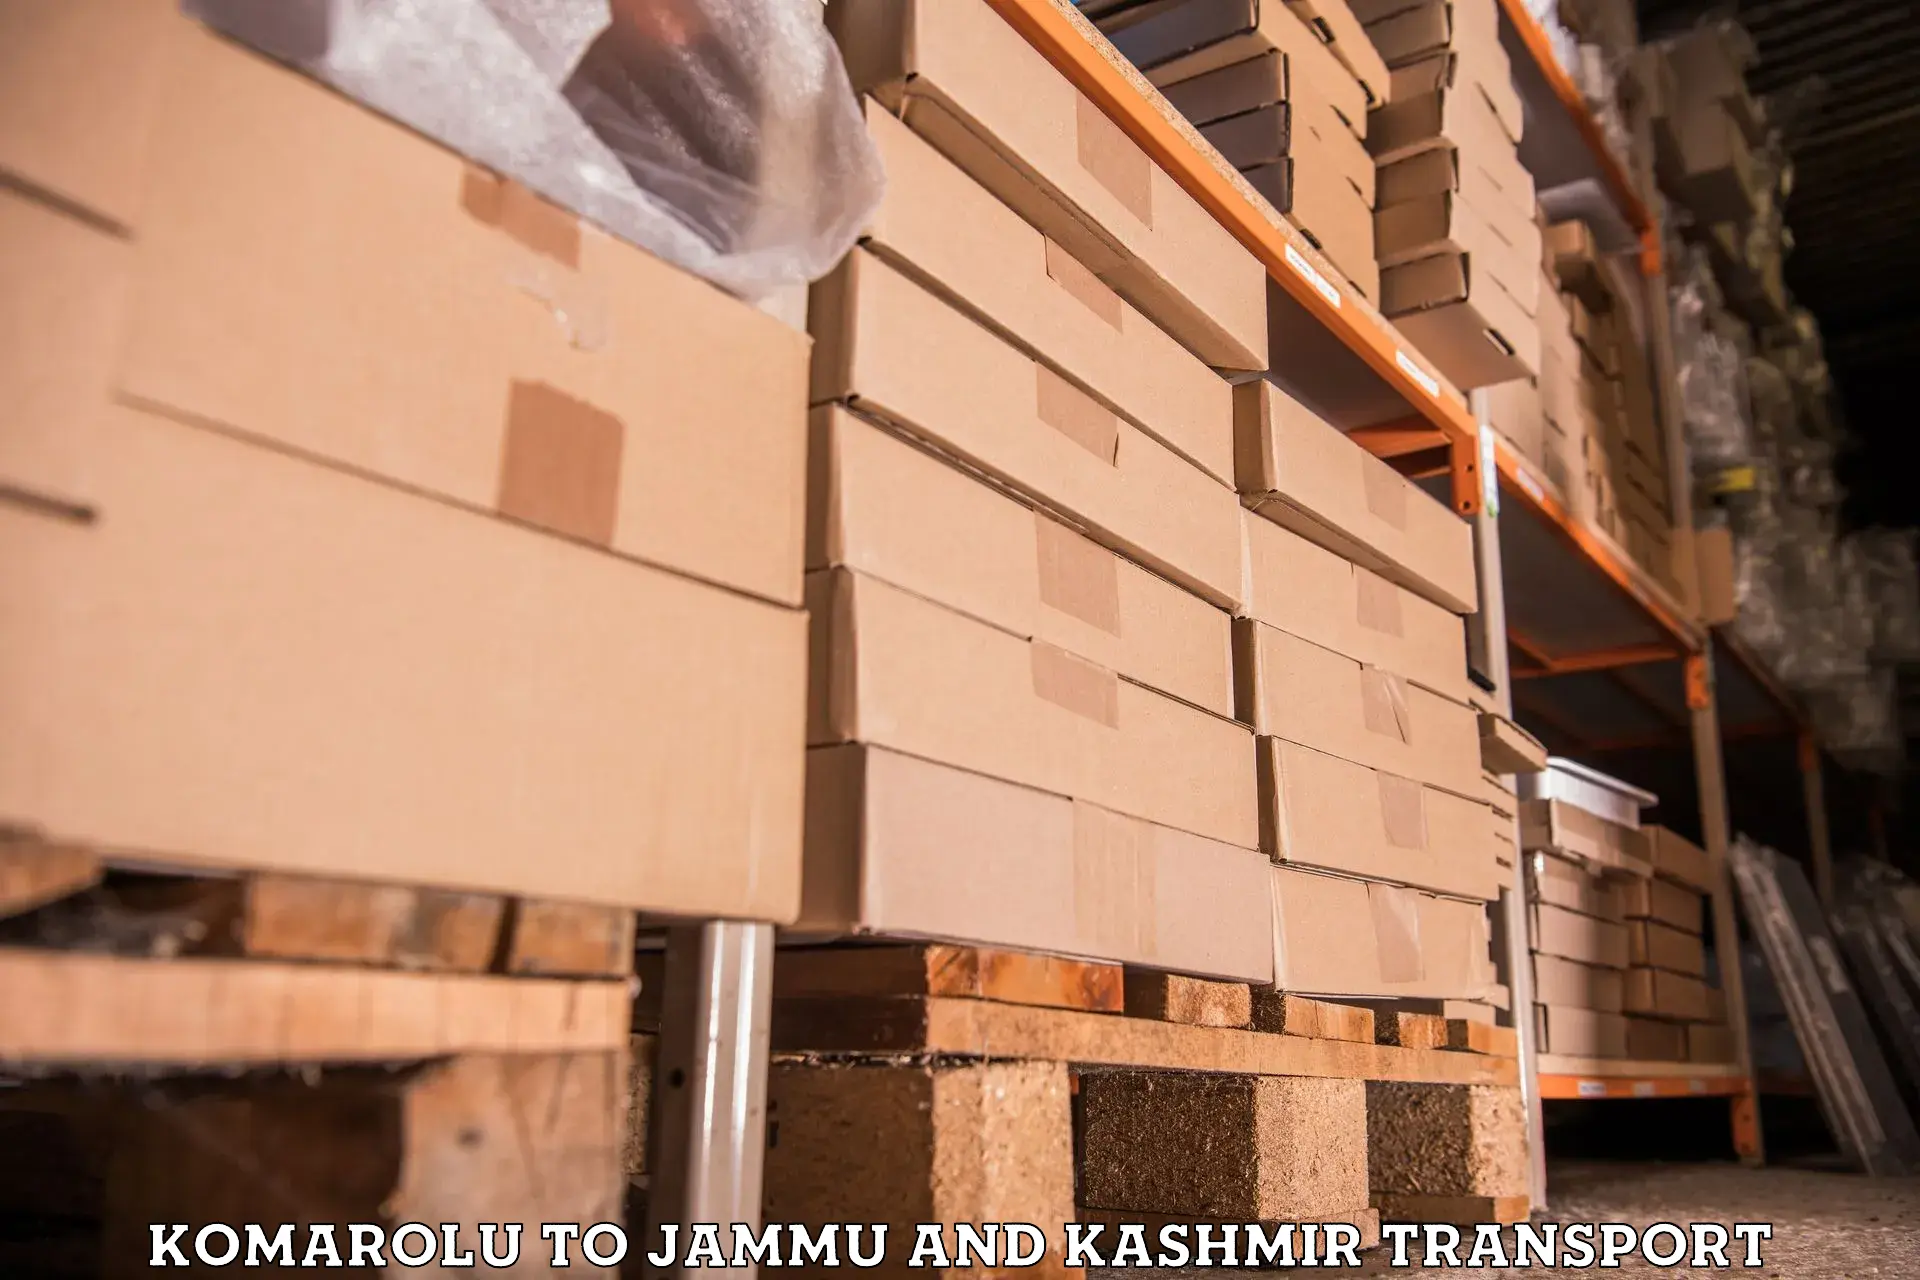 Part load transport service in India Komarolu to Srinagar Kashmir